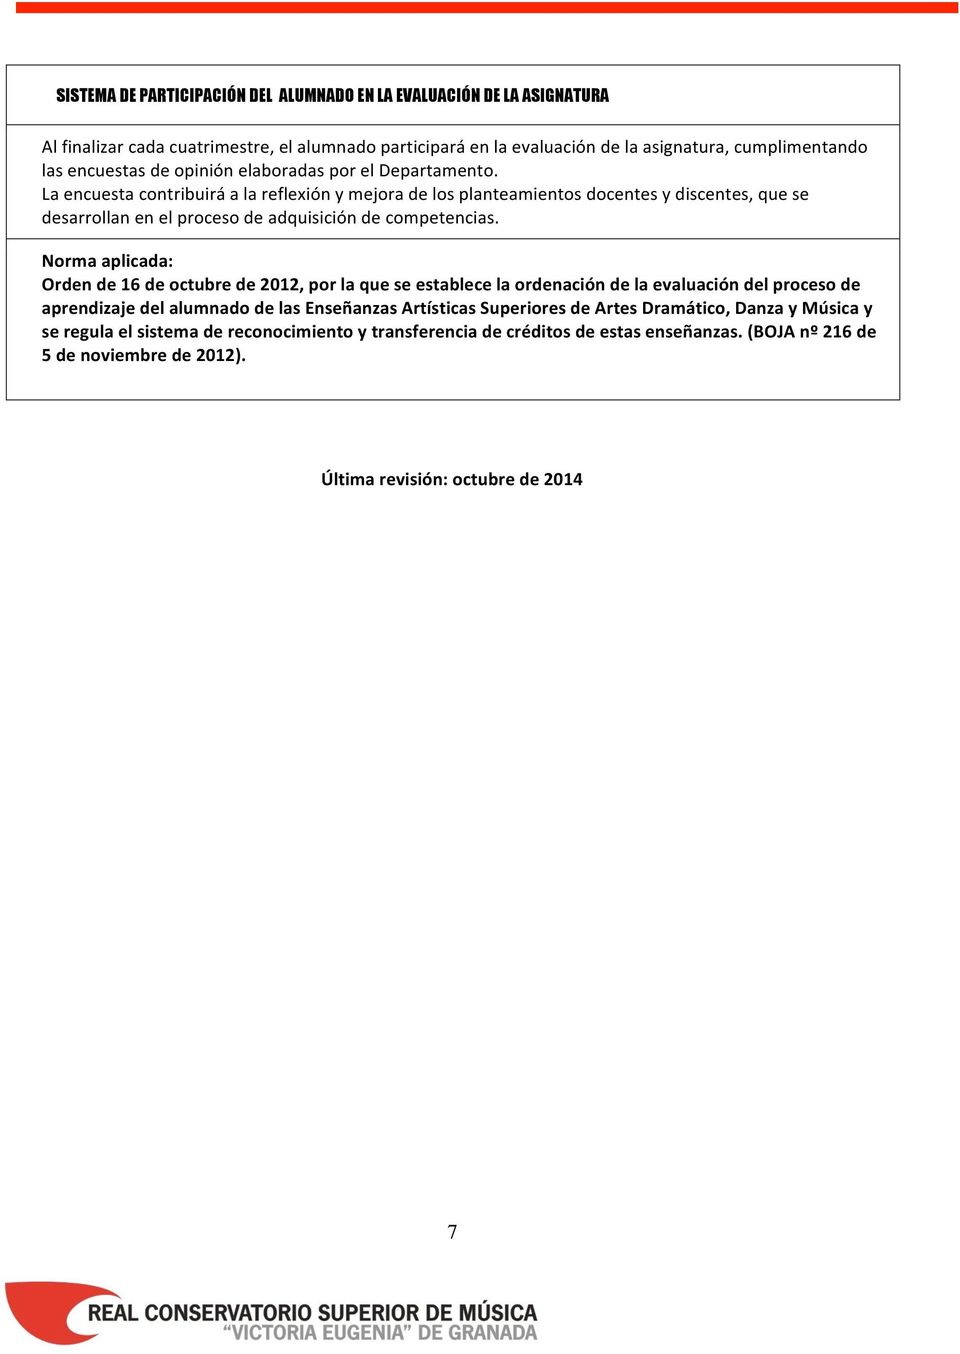 Norma aplicada: Orden de 16 de octubre de 2012, por la que se establece la ordenación de la evaluación del proceso de aprendizaje del alumnado de las Enseñanzas Artísticas Superiores de Artes